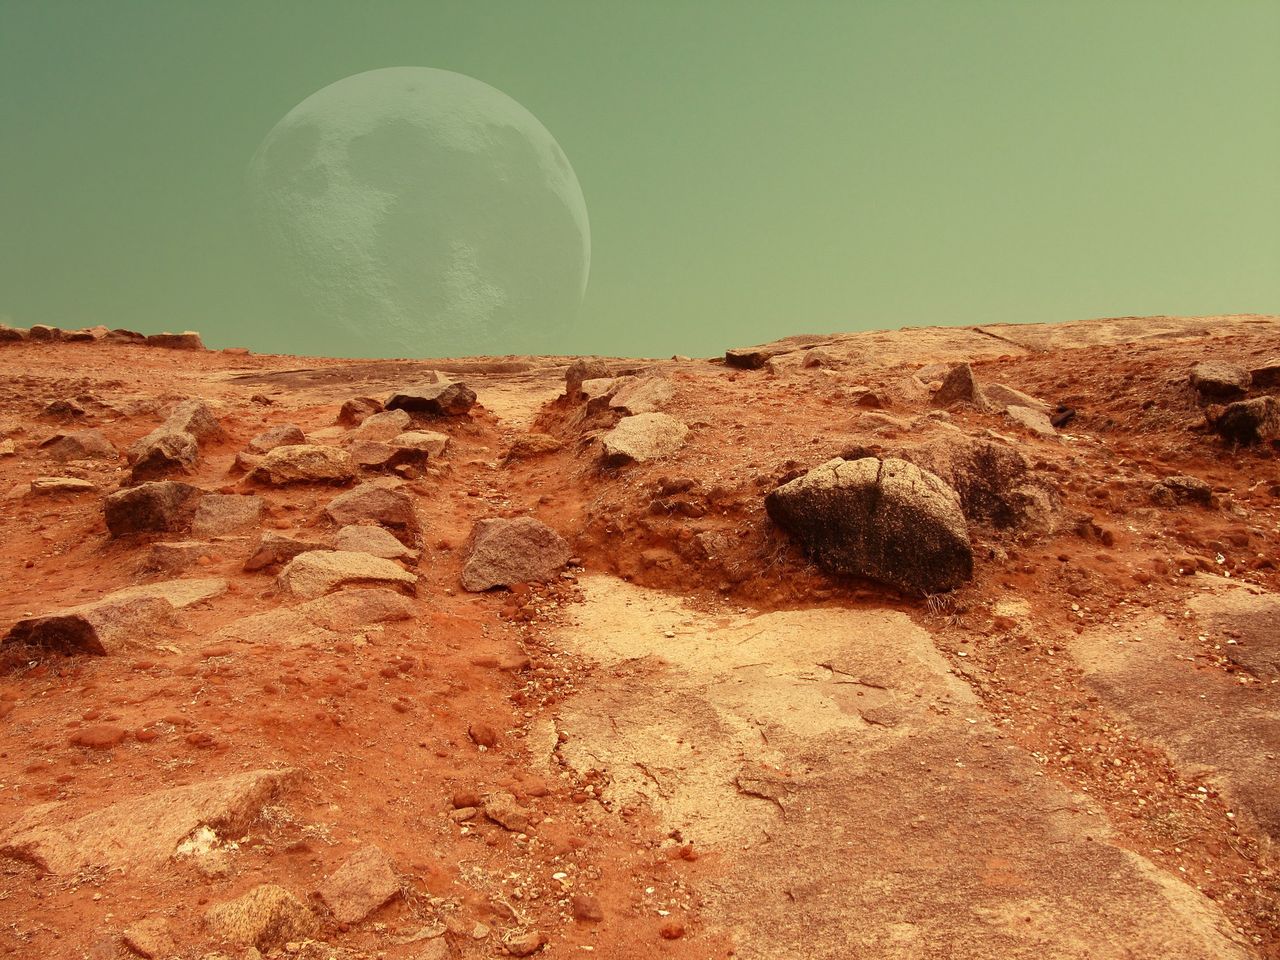 Elon Musk obawia się o kolonizację Marsa. Martwi go niewystarczająca liczba ludzi